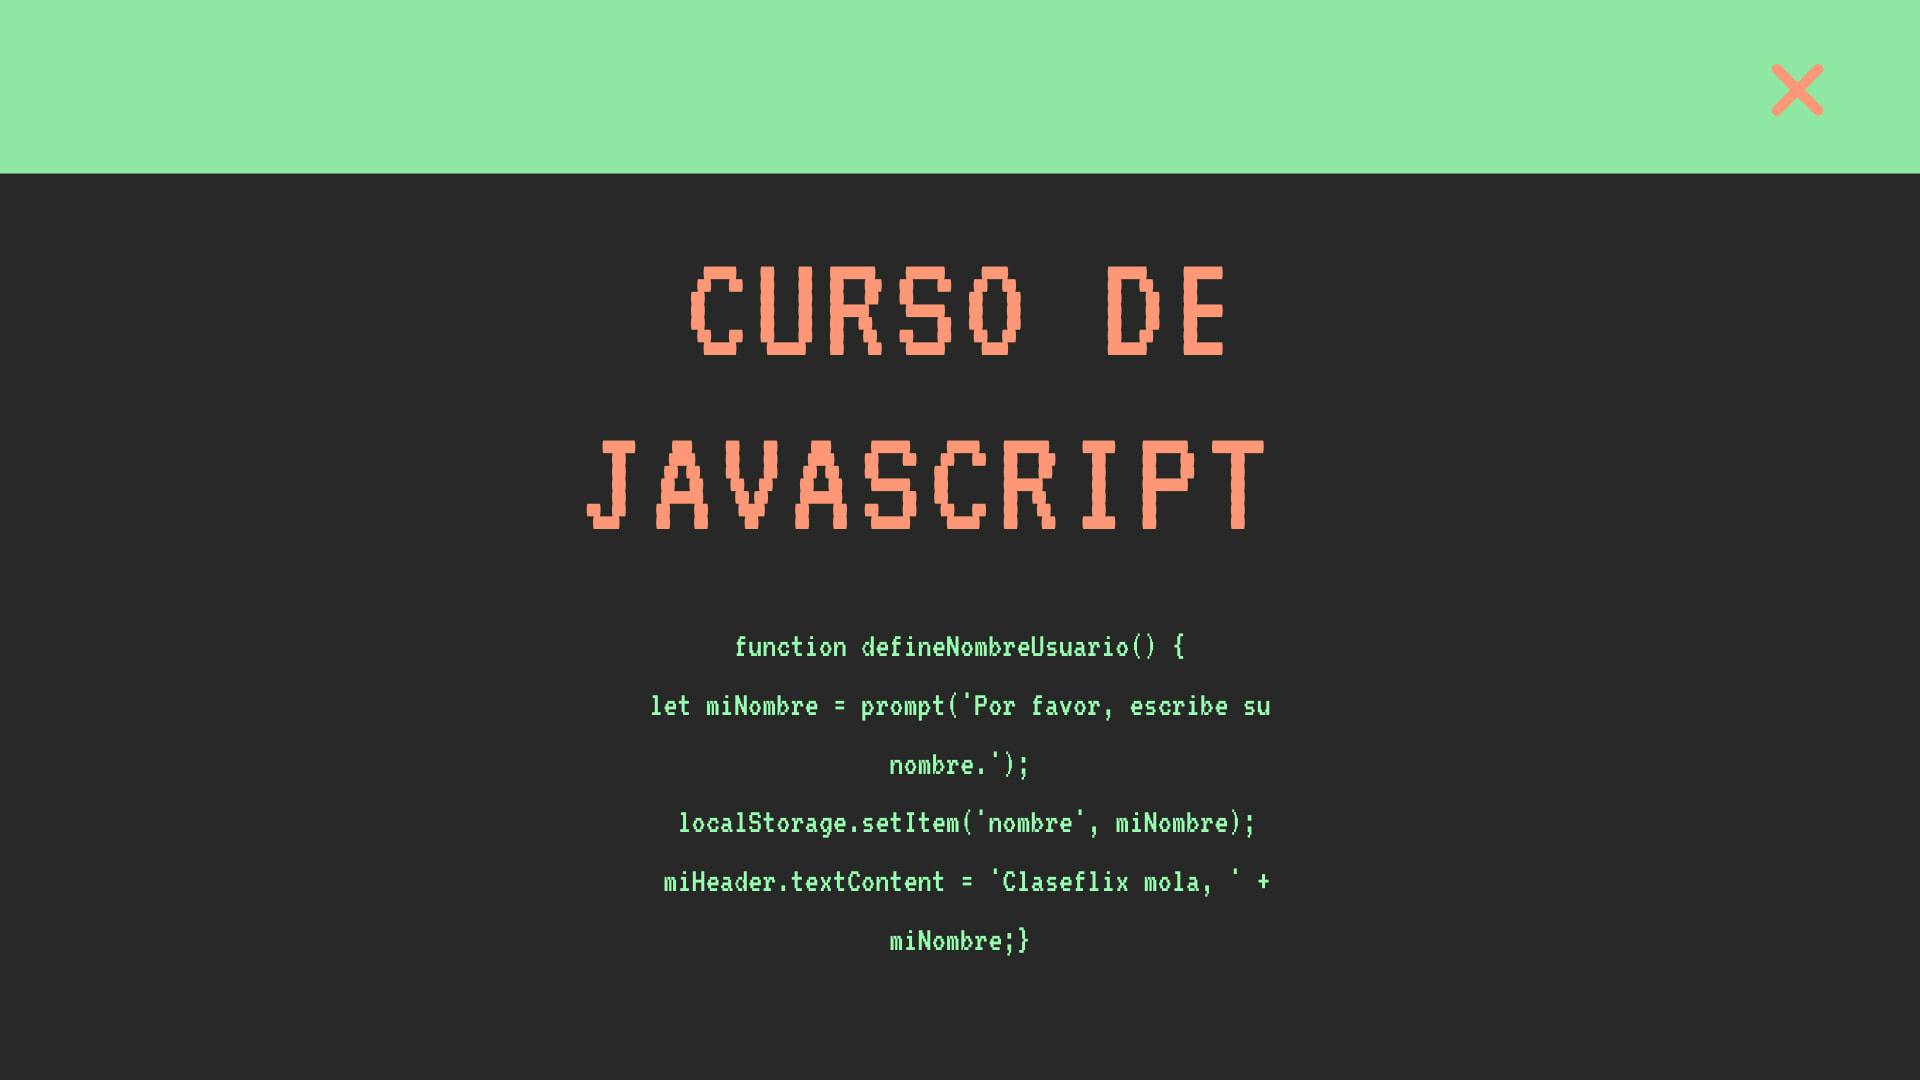 Curso de Javascript